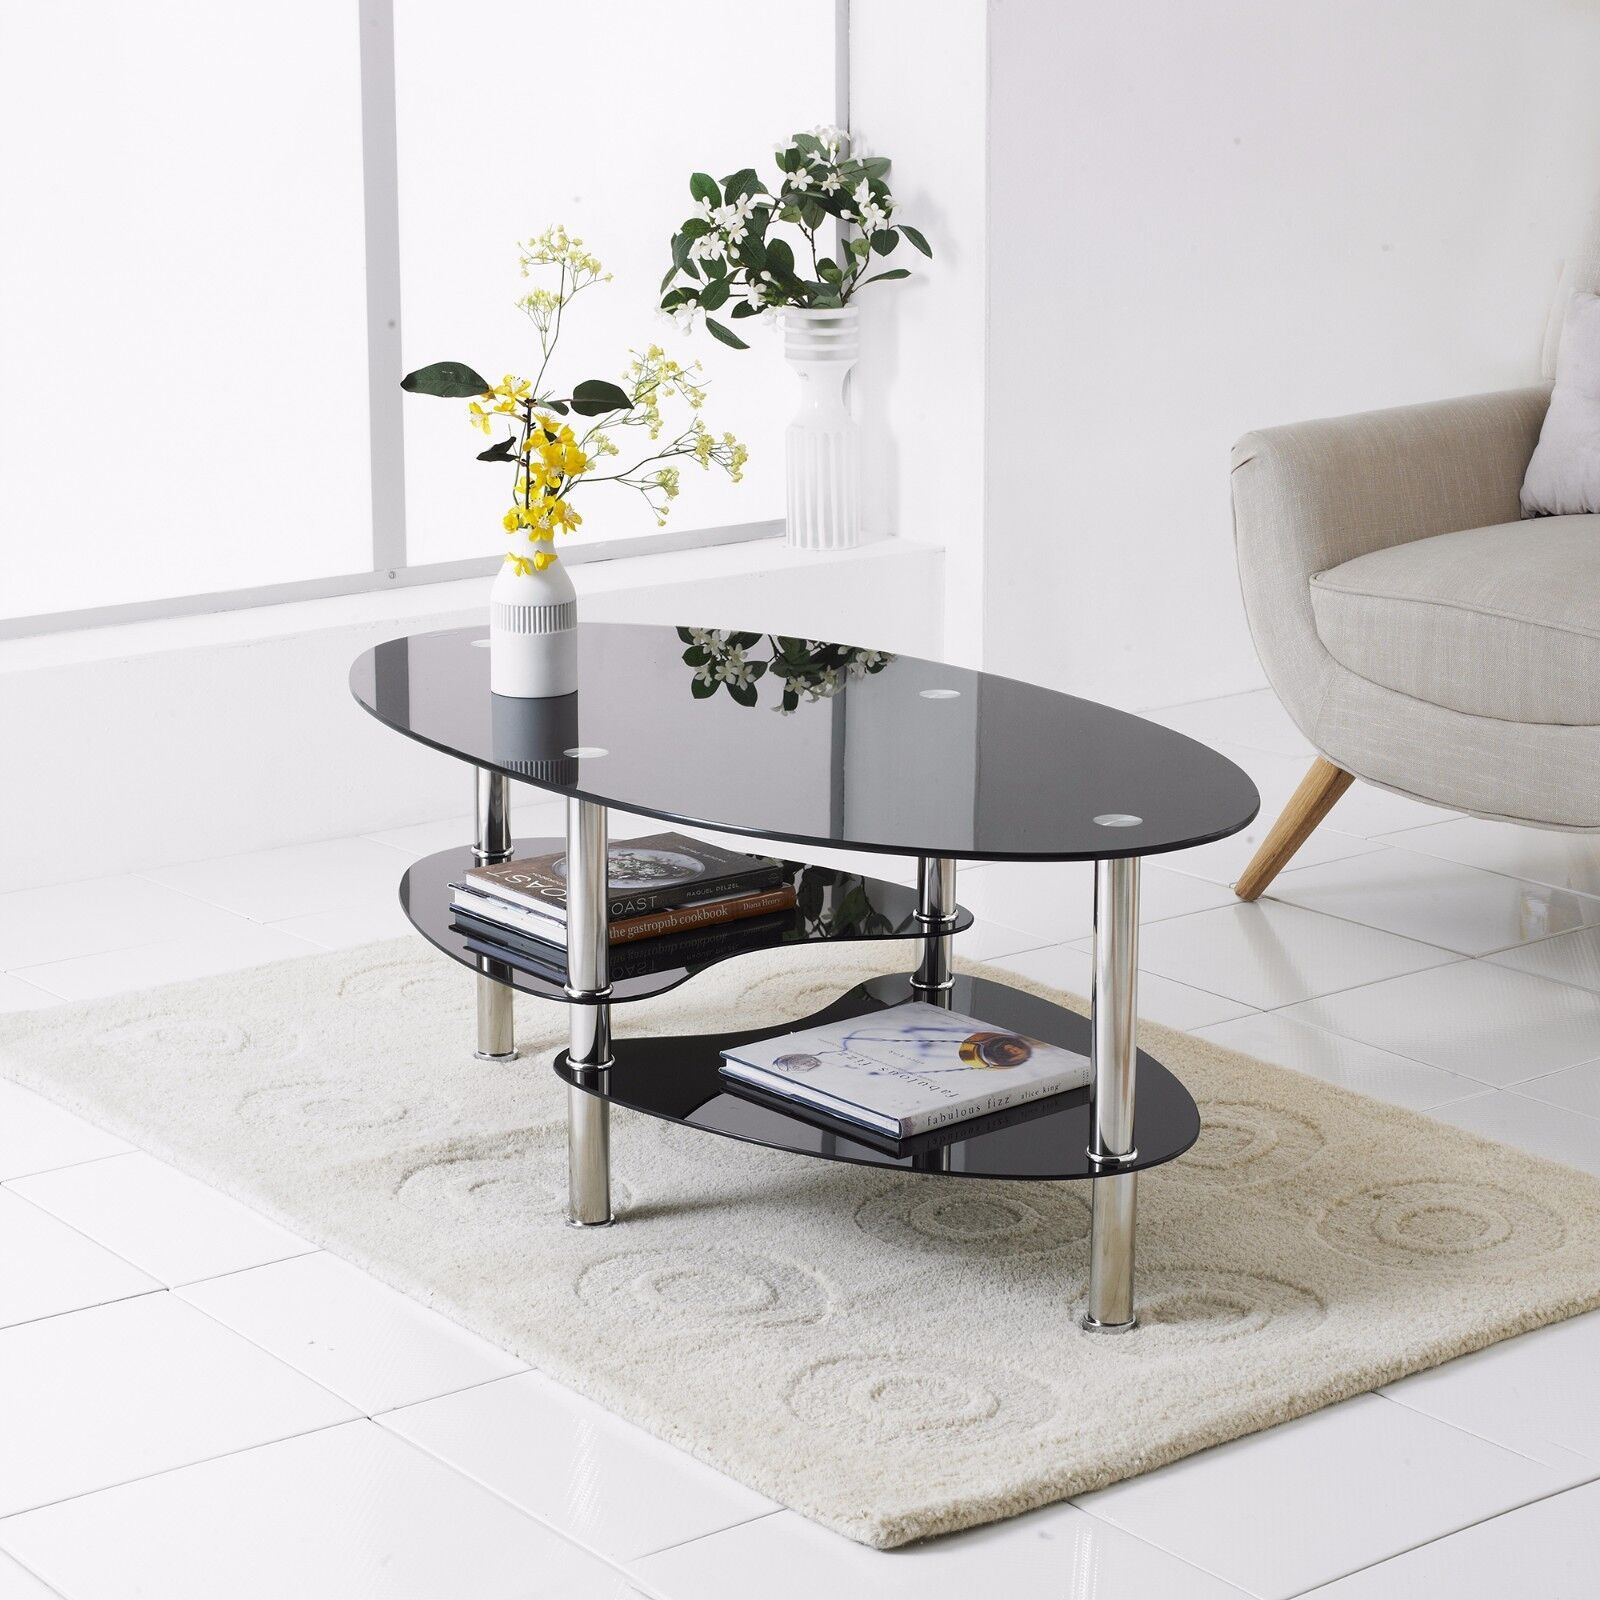 Modern Rectangle Oval Glass & Chrome Living Room Coffee Table With With Glass Coffee Tables With Lower Shelves (Gallery 3 of 20)